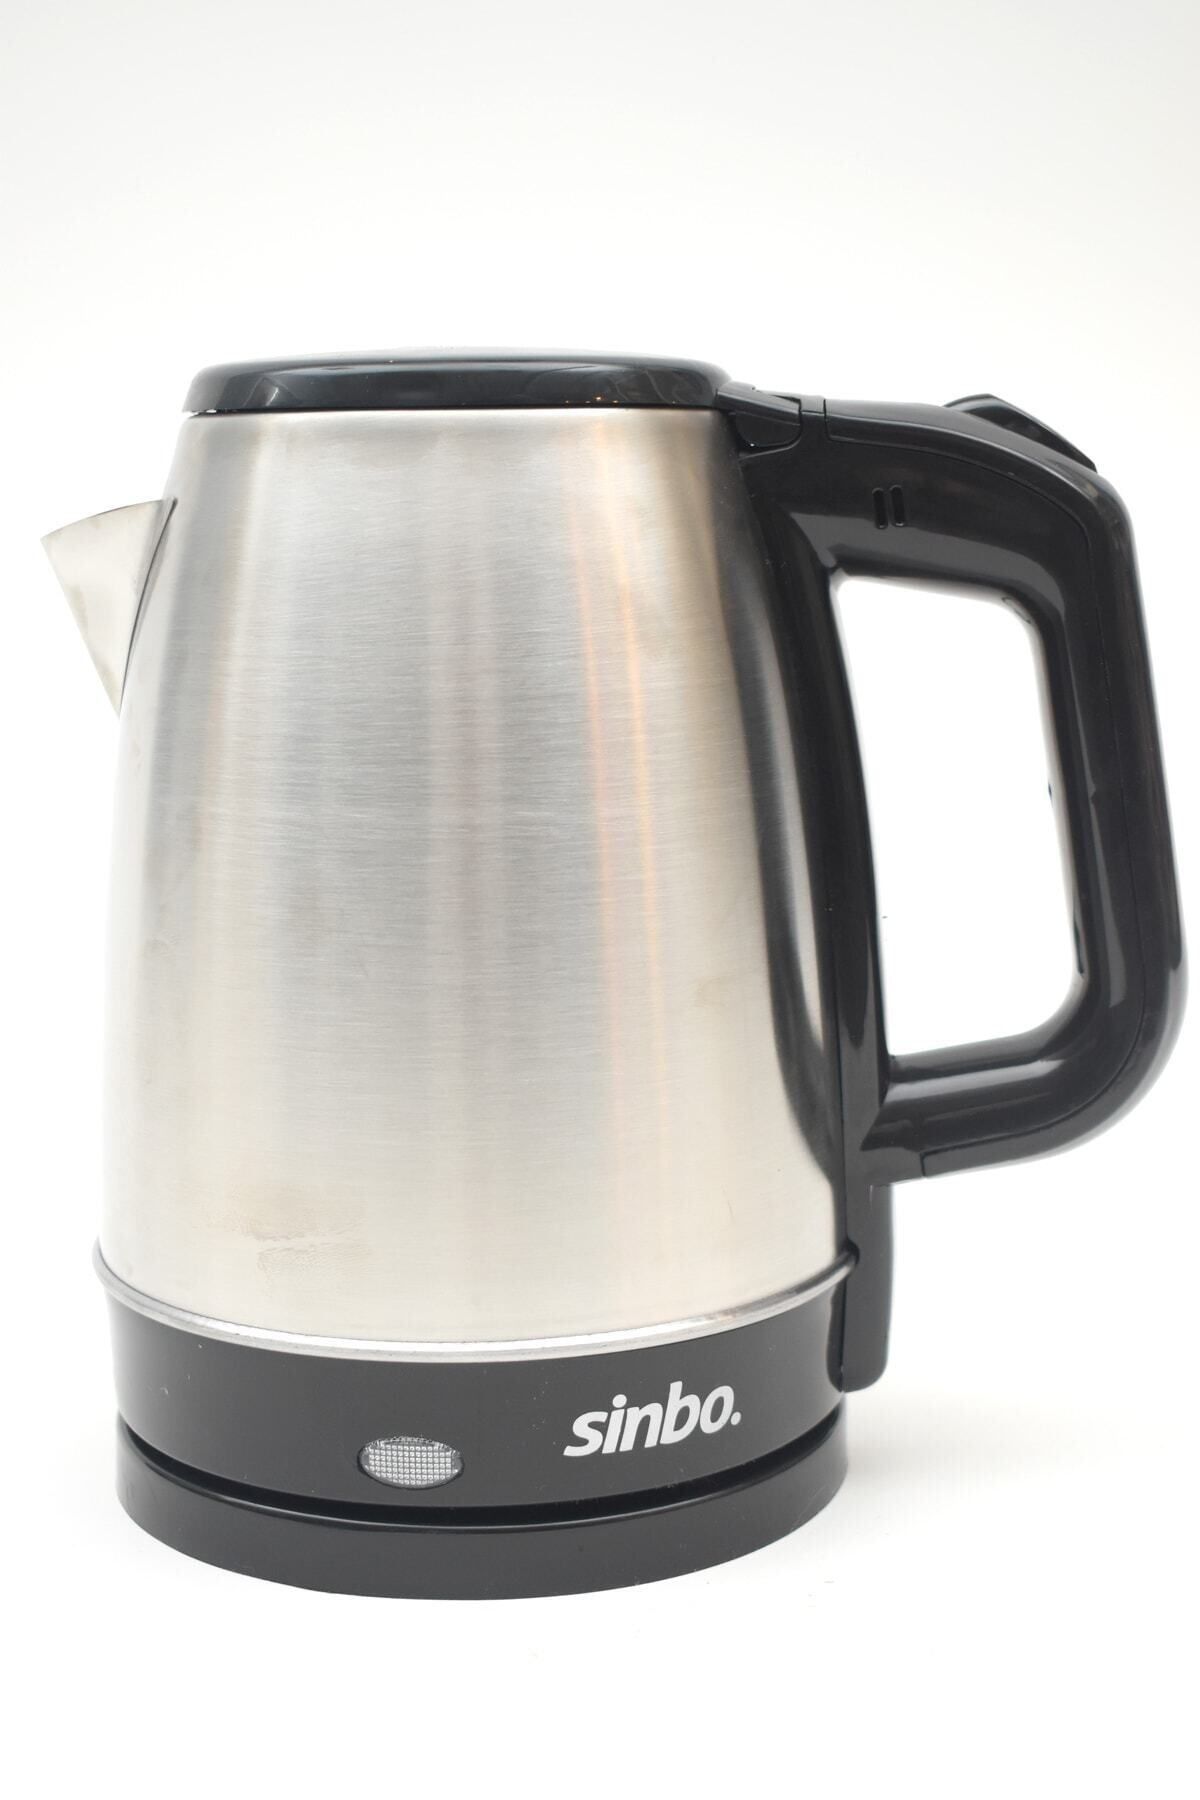 Sinbo Sk-8015 Kablosuz Su Isıtıcı Paslanmaz Çelik Kettle Krom